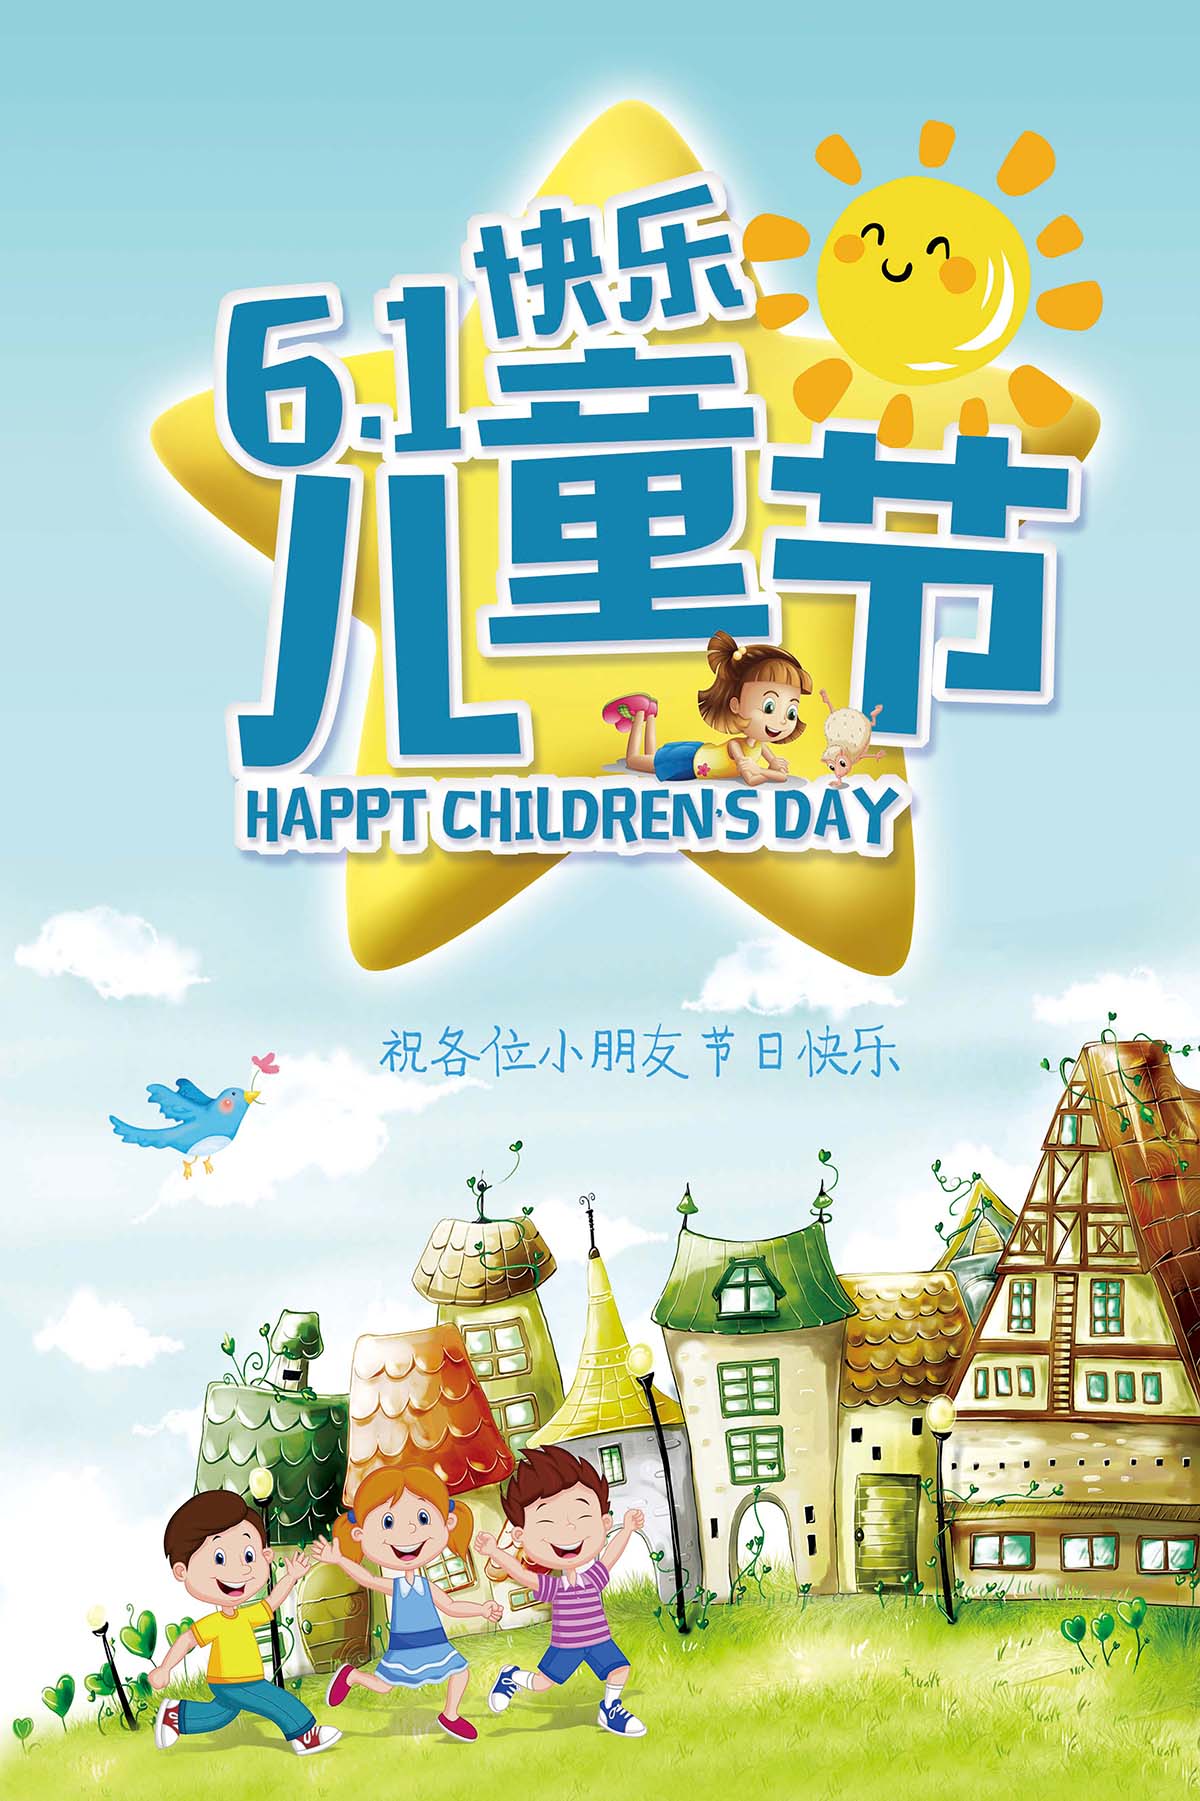 61六一儿童节城堡手绘风格海报设计PSD源文件